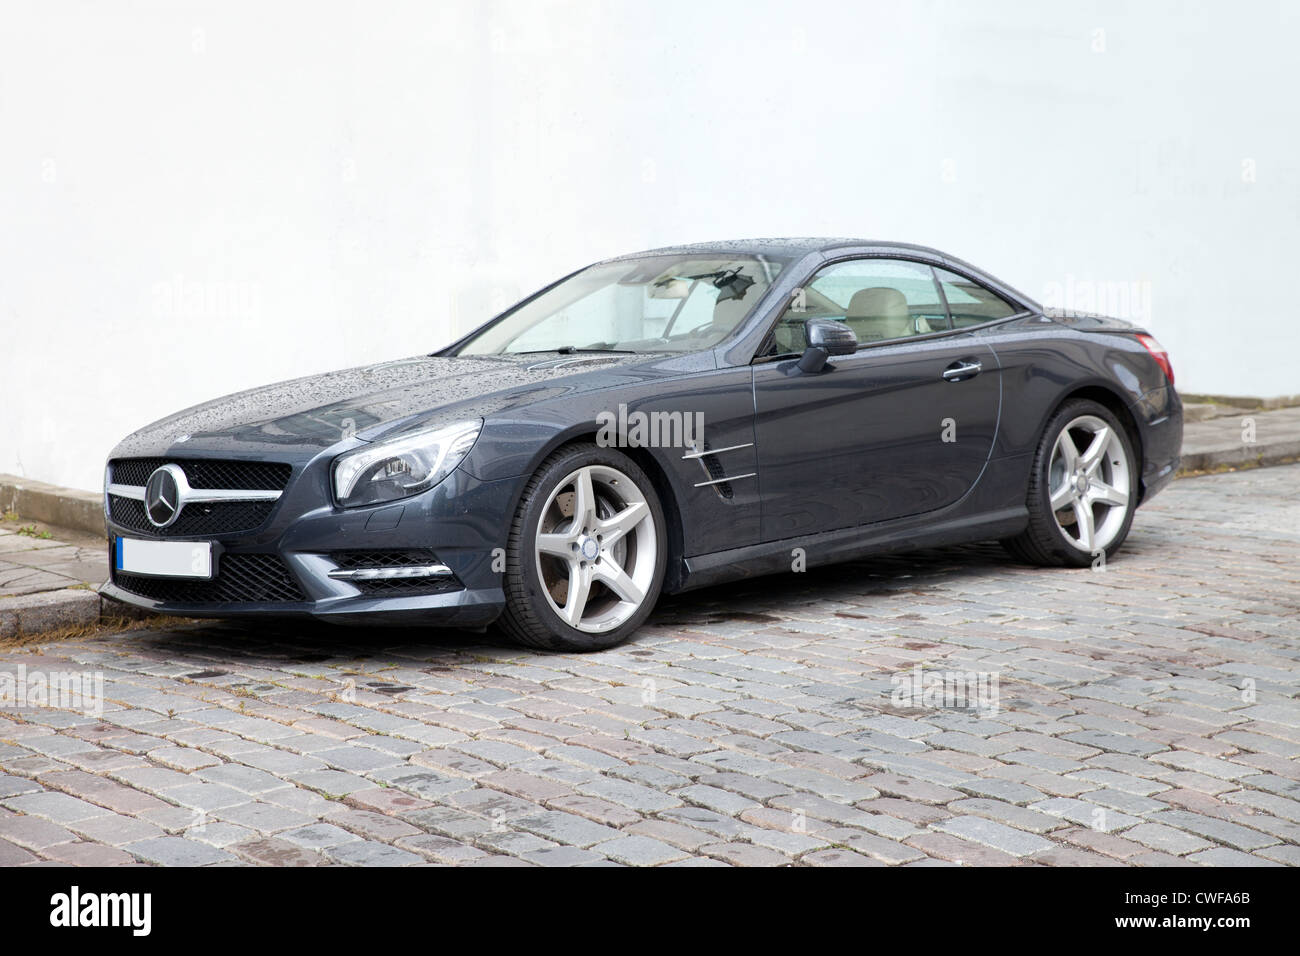 Année modèle 2012 - Nouveau Mercedes Benz AMG Voiture de sport Banque D'Images